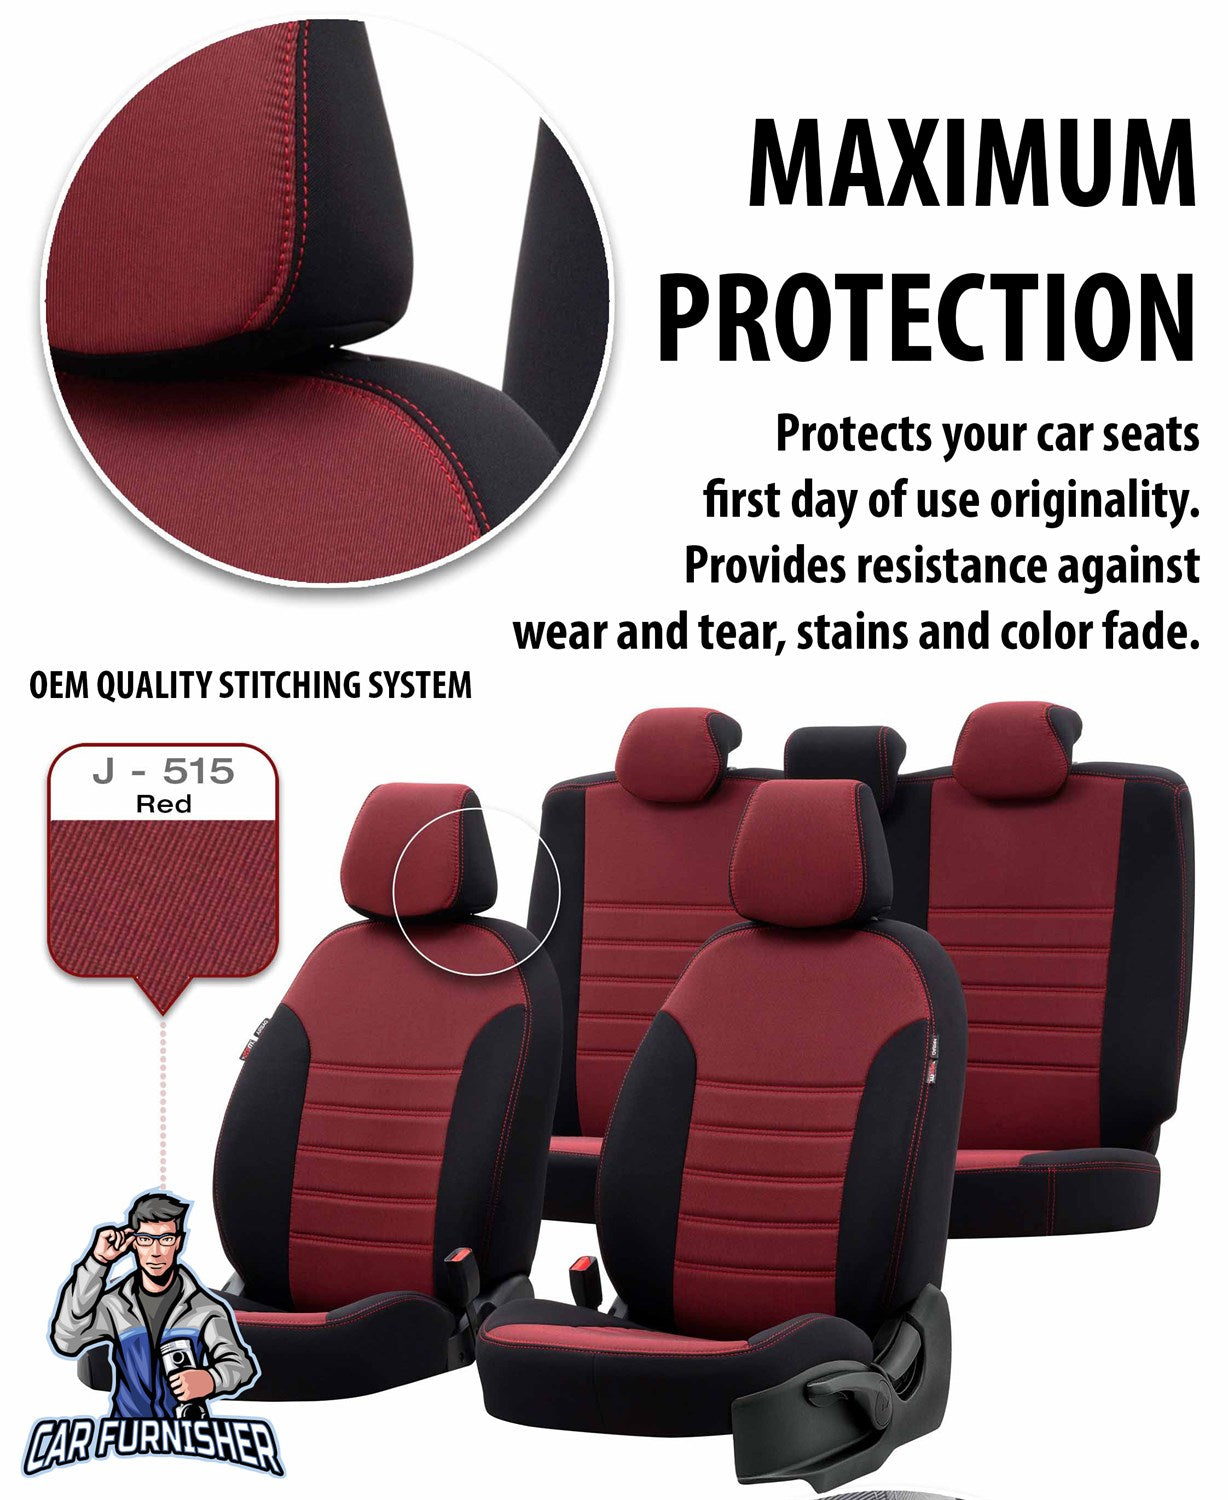 Bmw X1 Seat Cover Original Jacquard Design Gray Jacquard Fabric